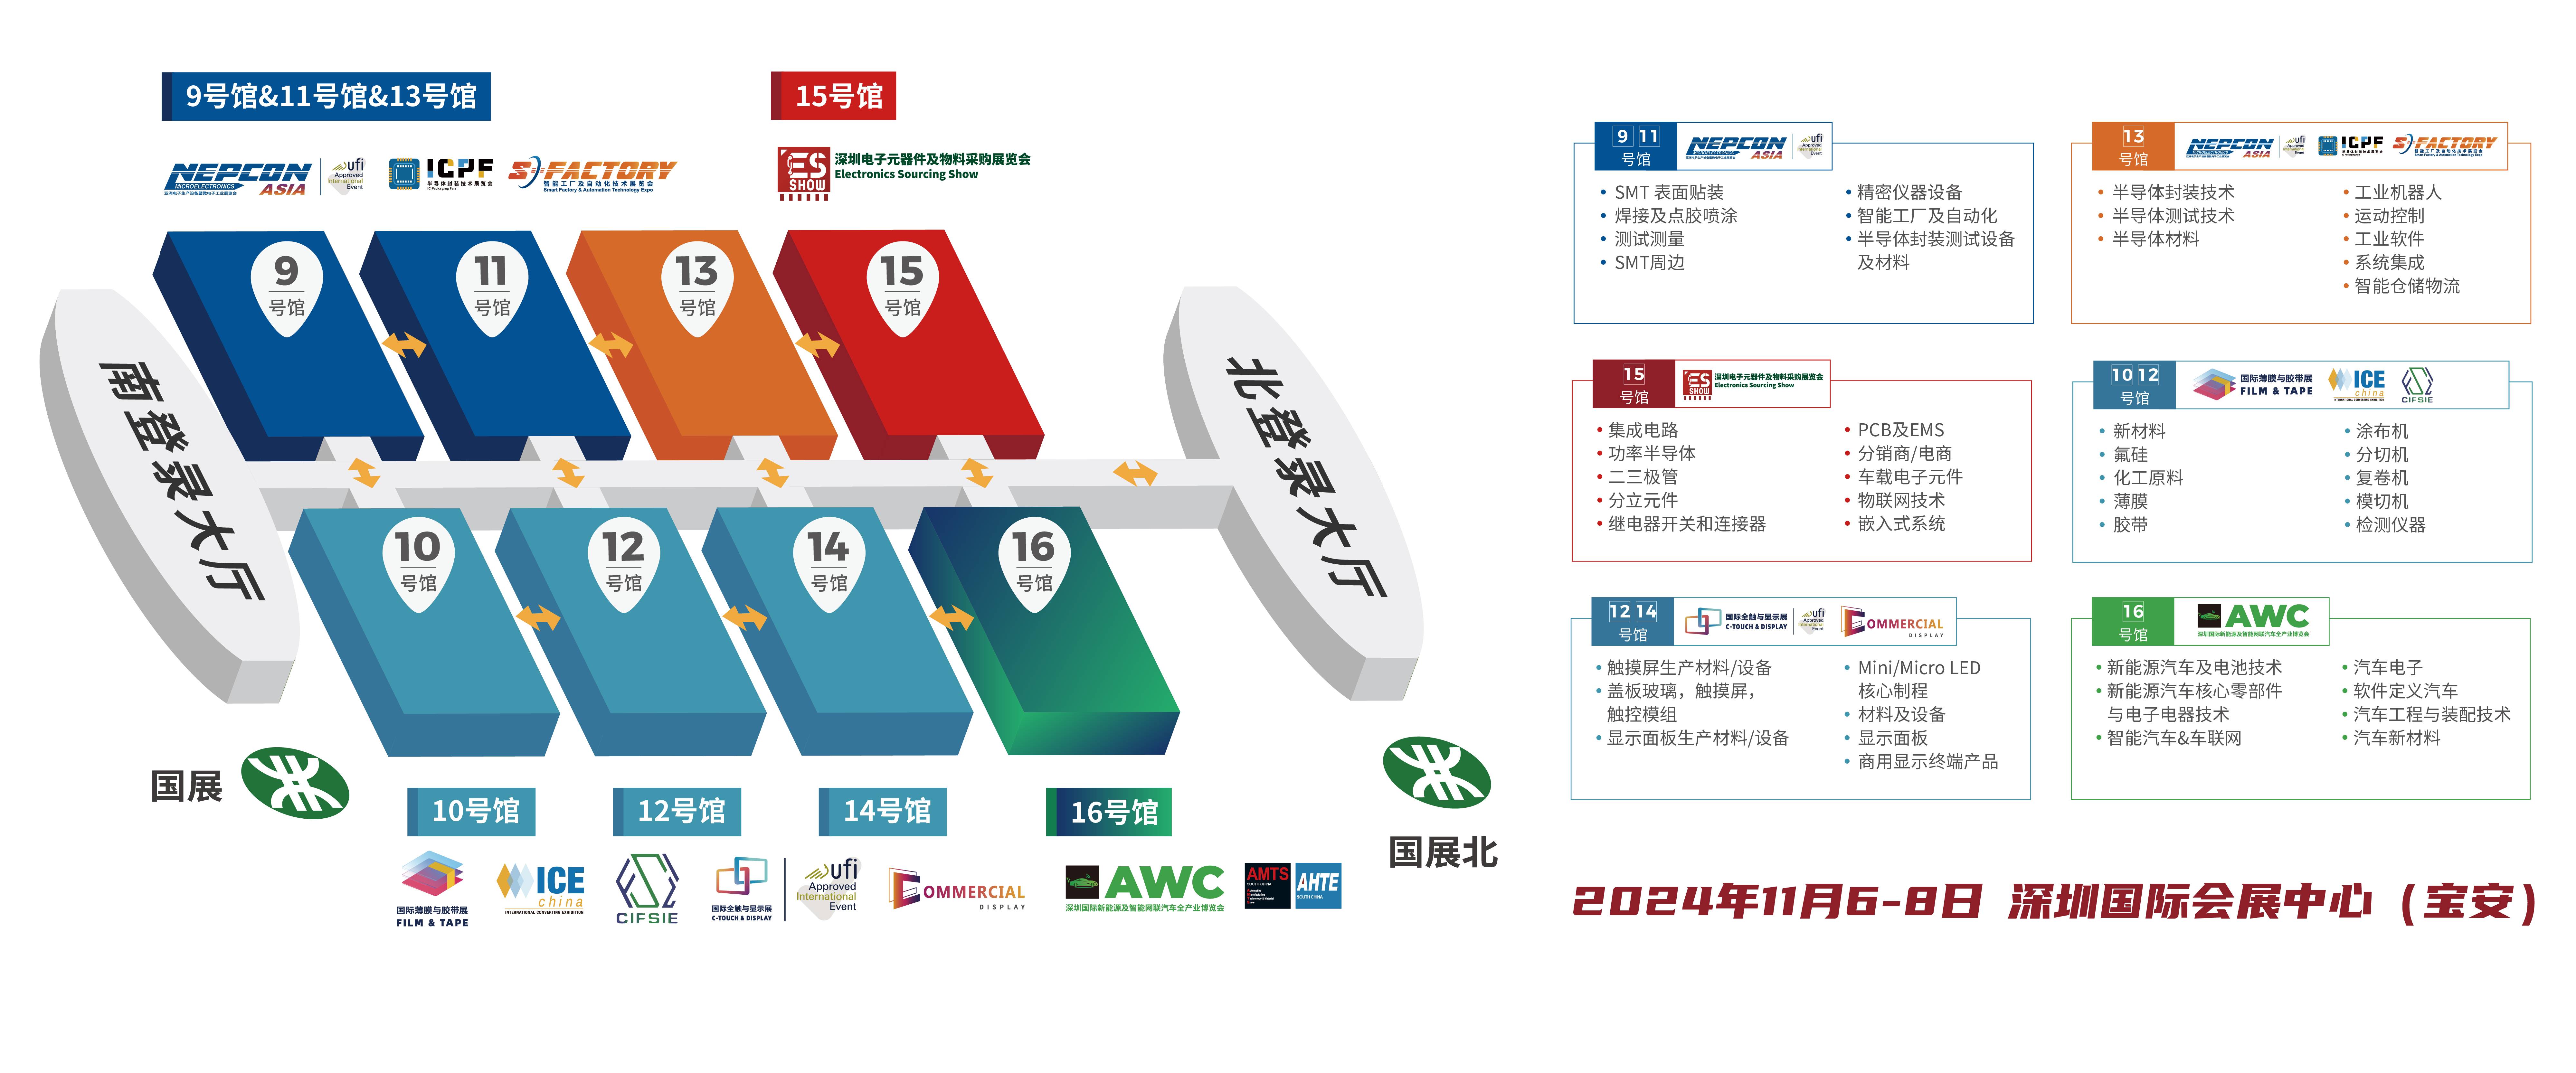 深圳电子展 中国电子展 电感式传感器 华南电子展 传感器